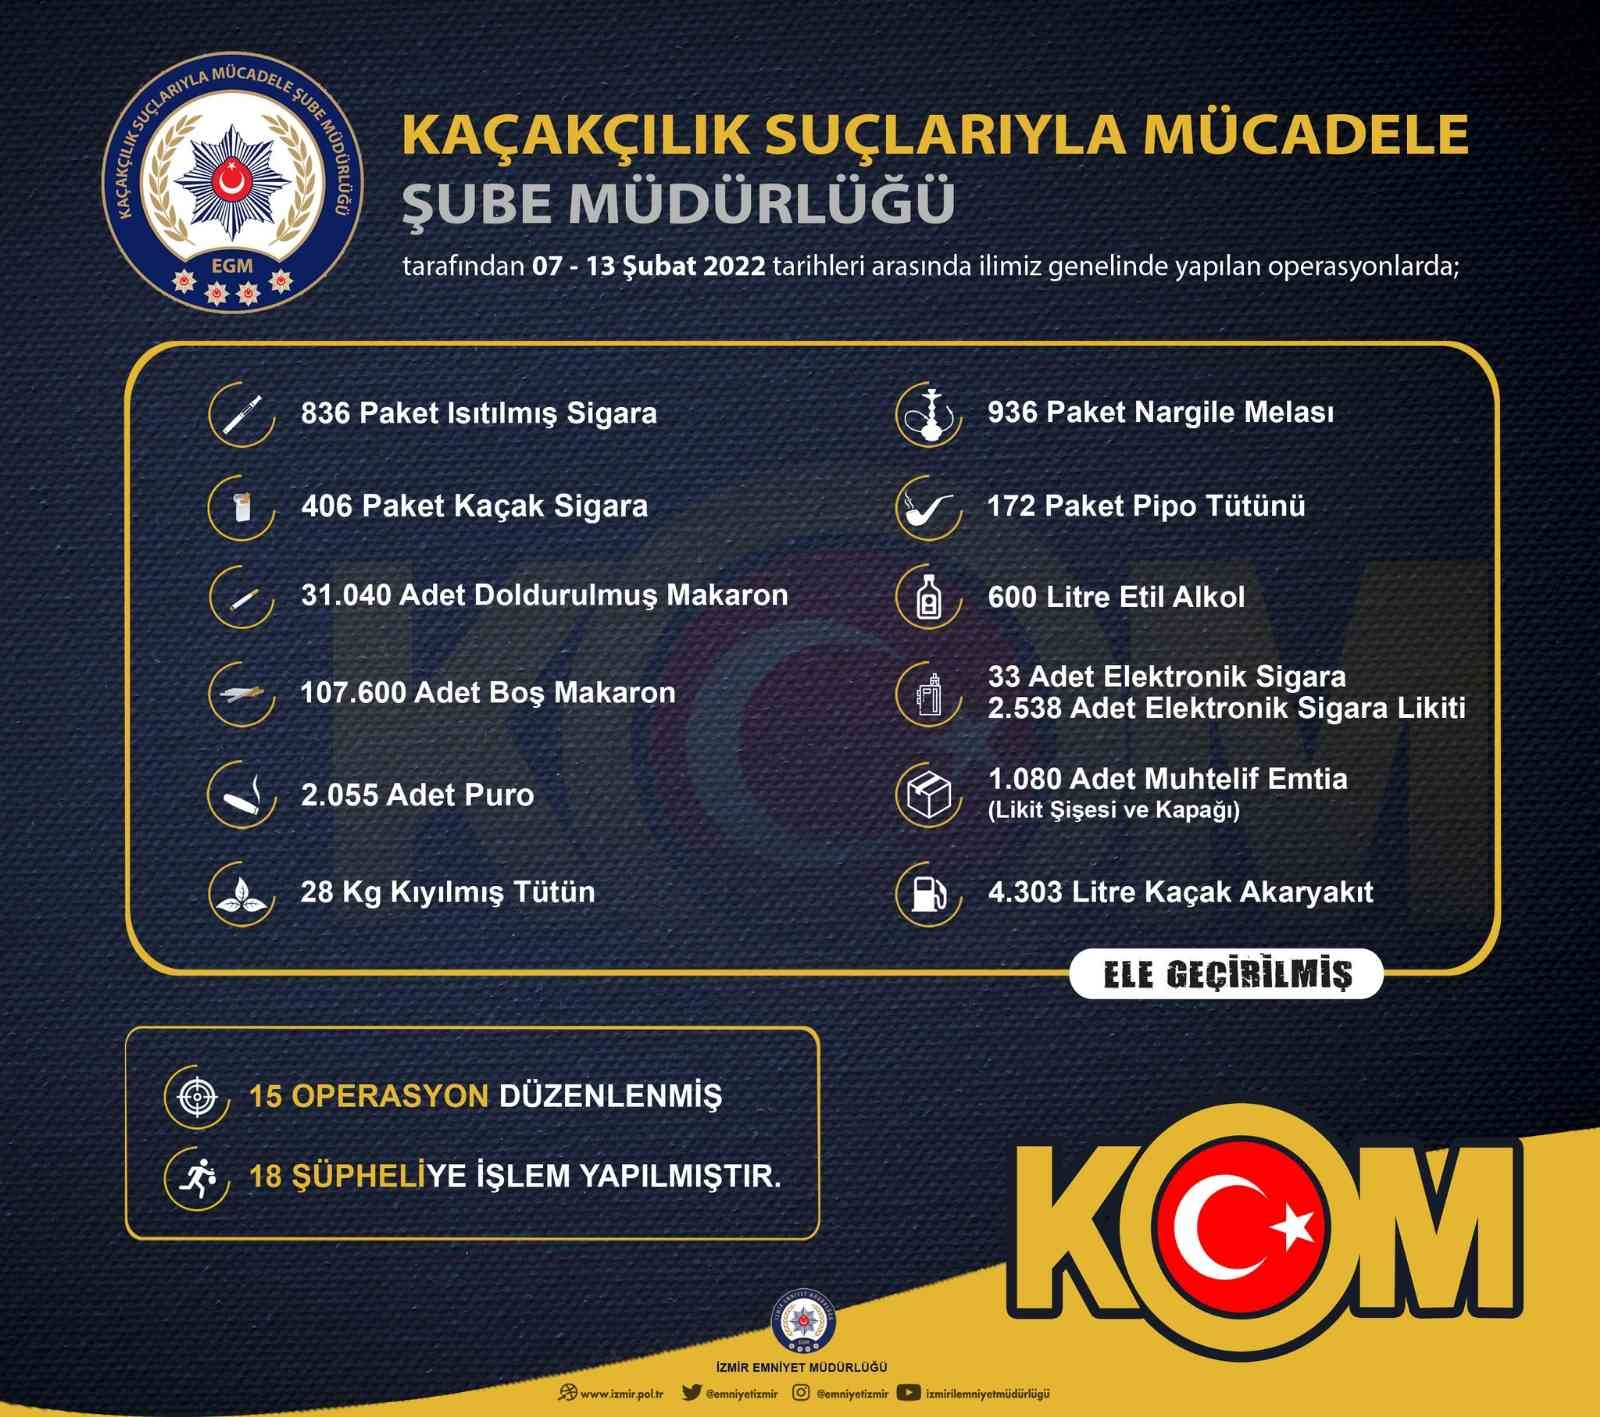 İzmir’de kaçakçılık operasyonlarında 18 şüpheliye işlem yapıldı #izmir